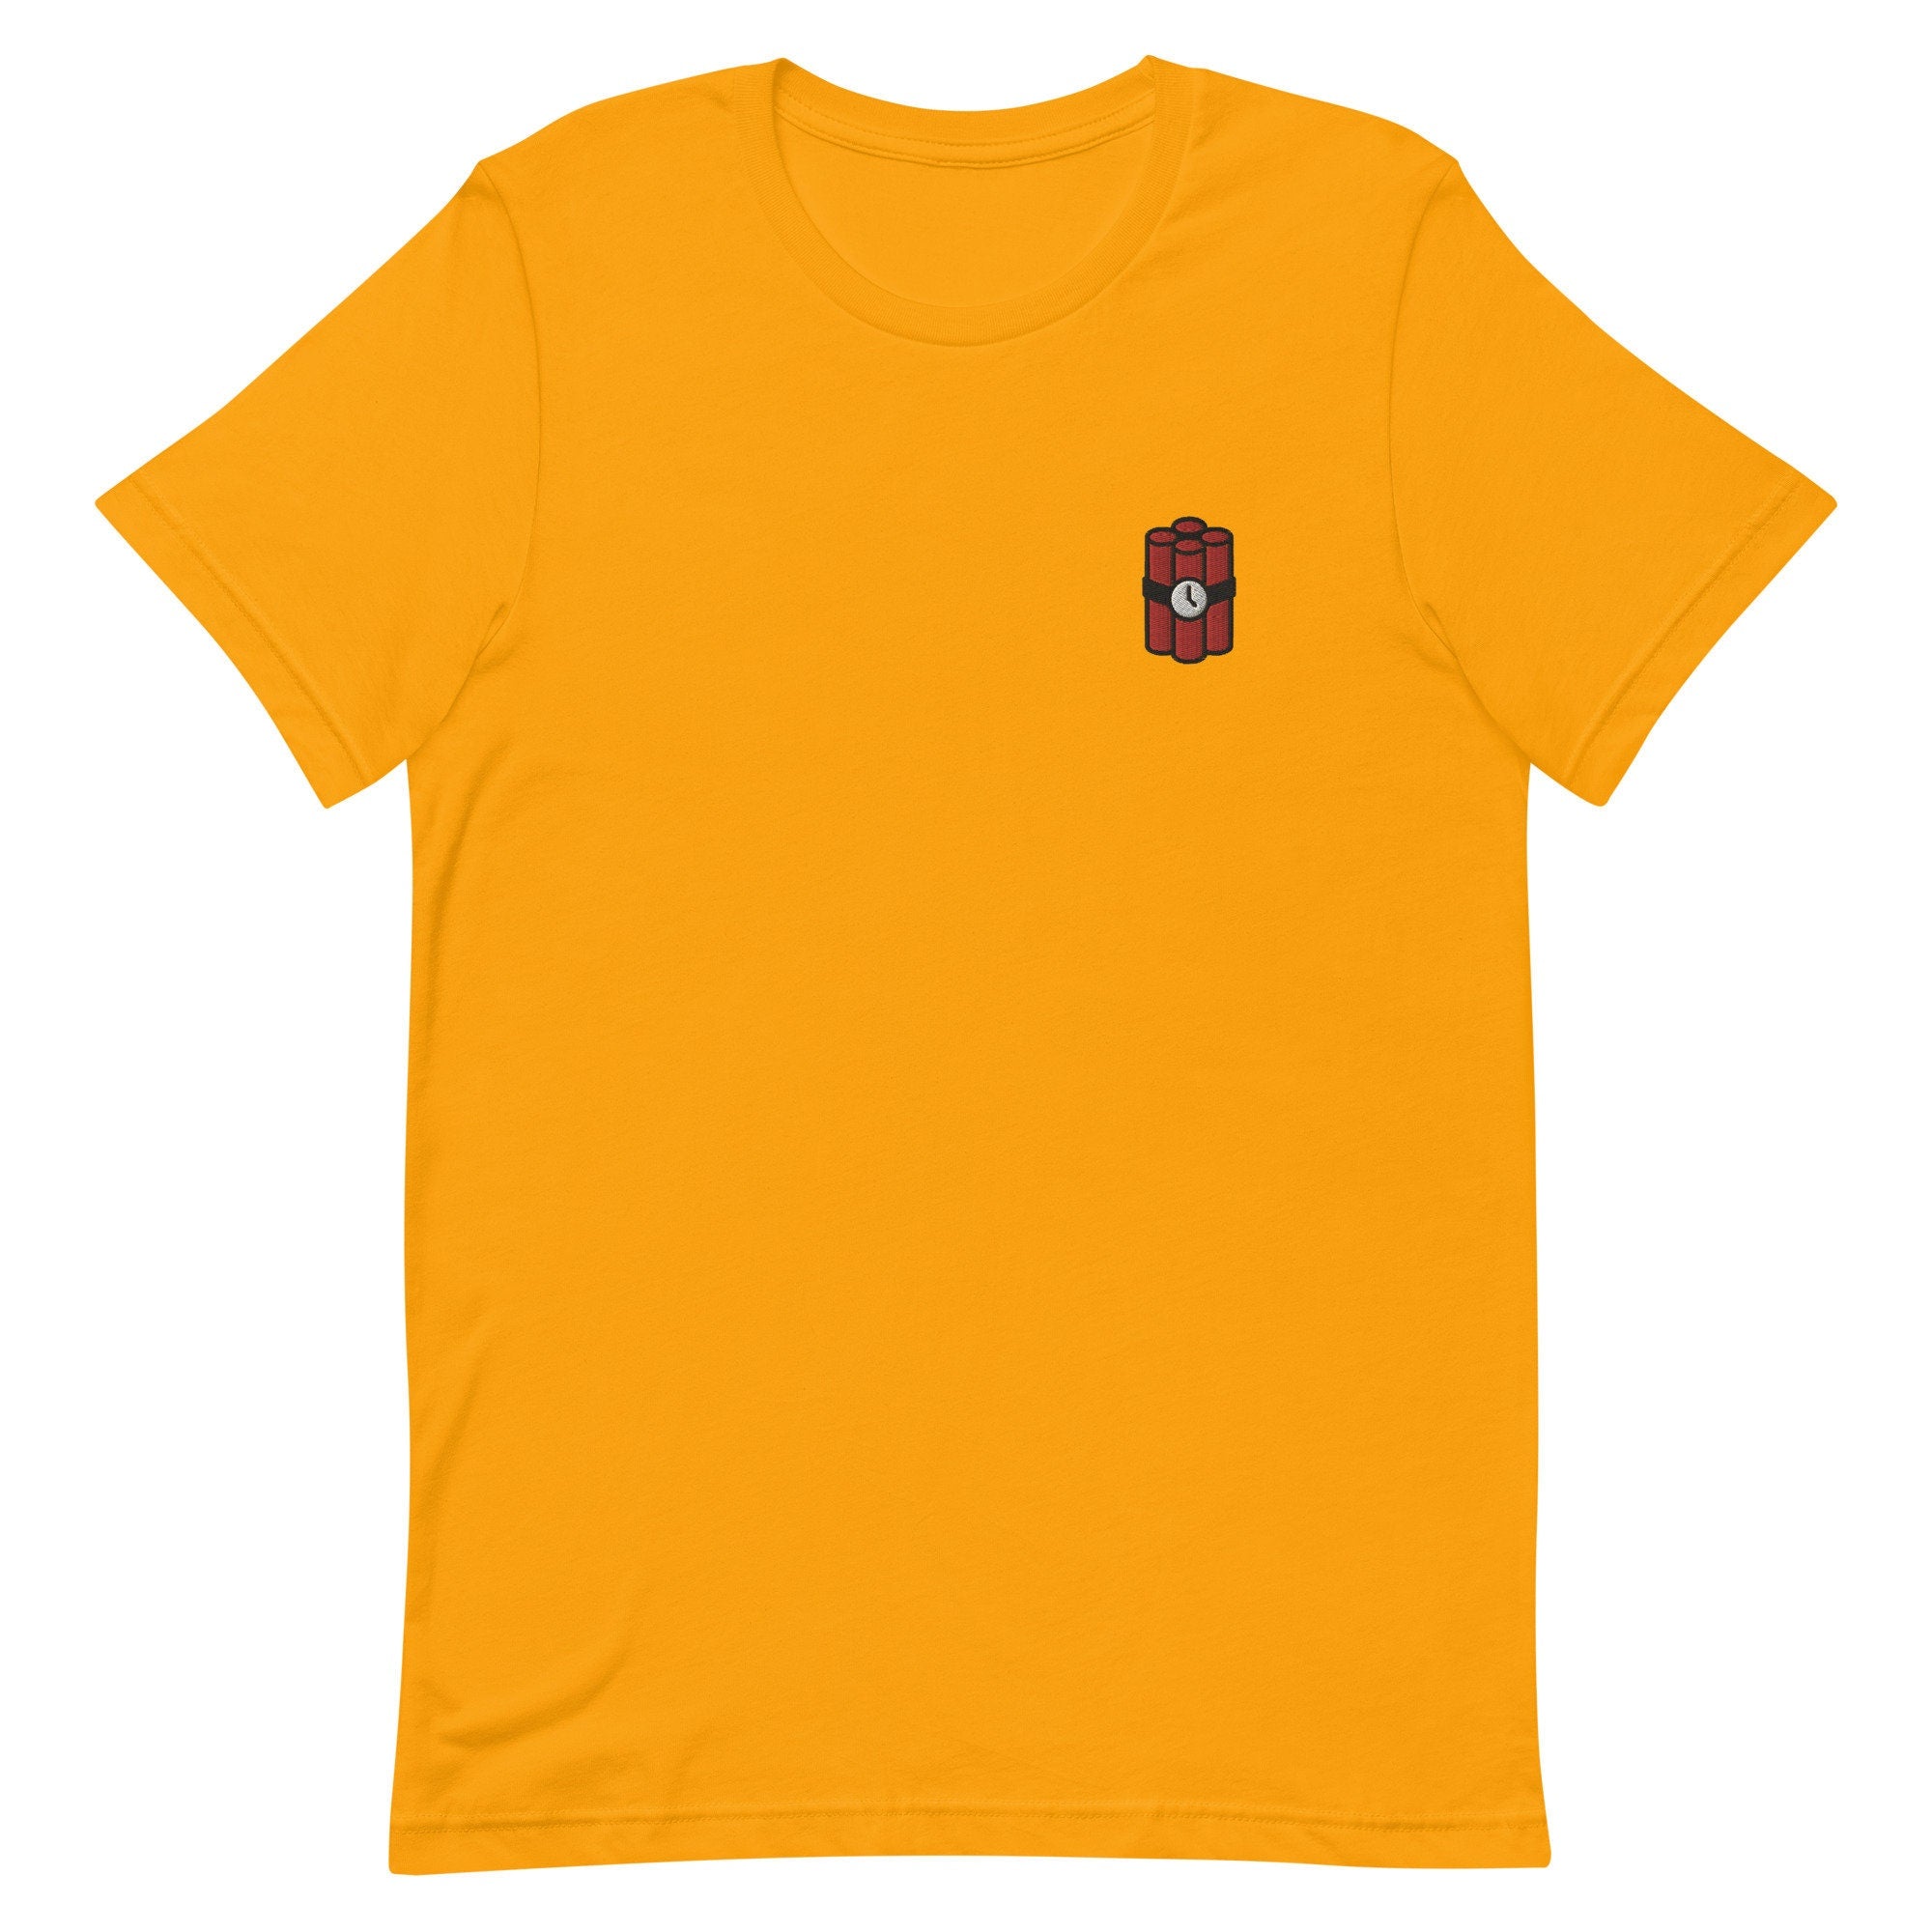 TNT Premium Men's T-Shirt, Embroidered Men's T-Shirt Gift for Boyfriend, Men's Short Sleeve Shirt - Multiple Colors